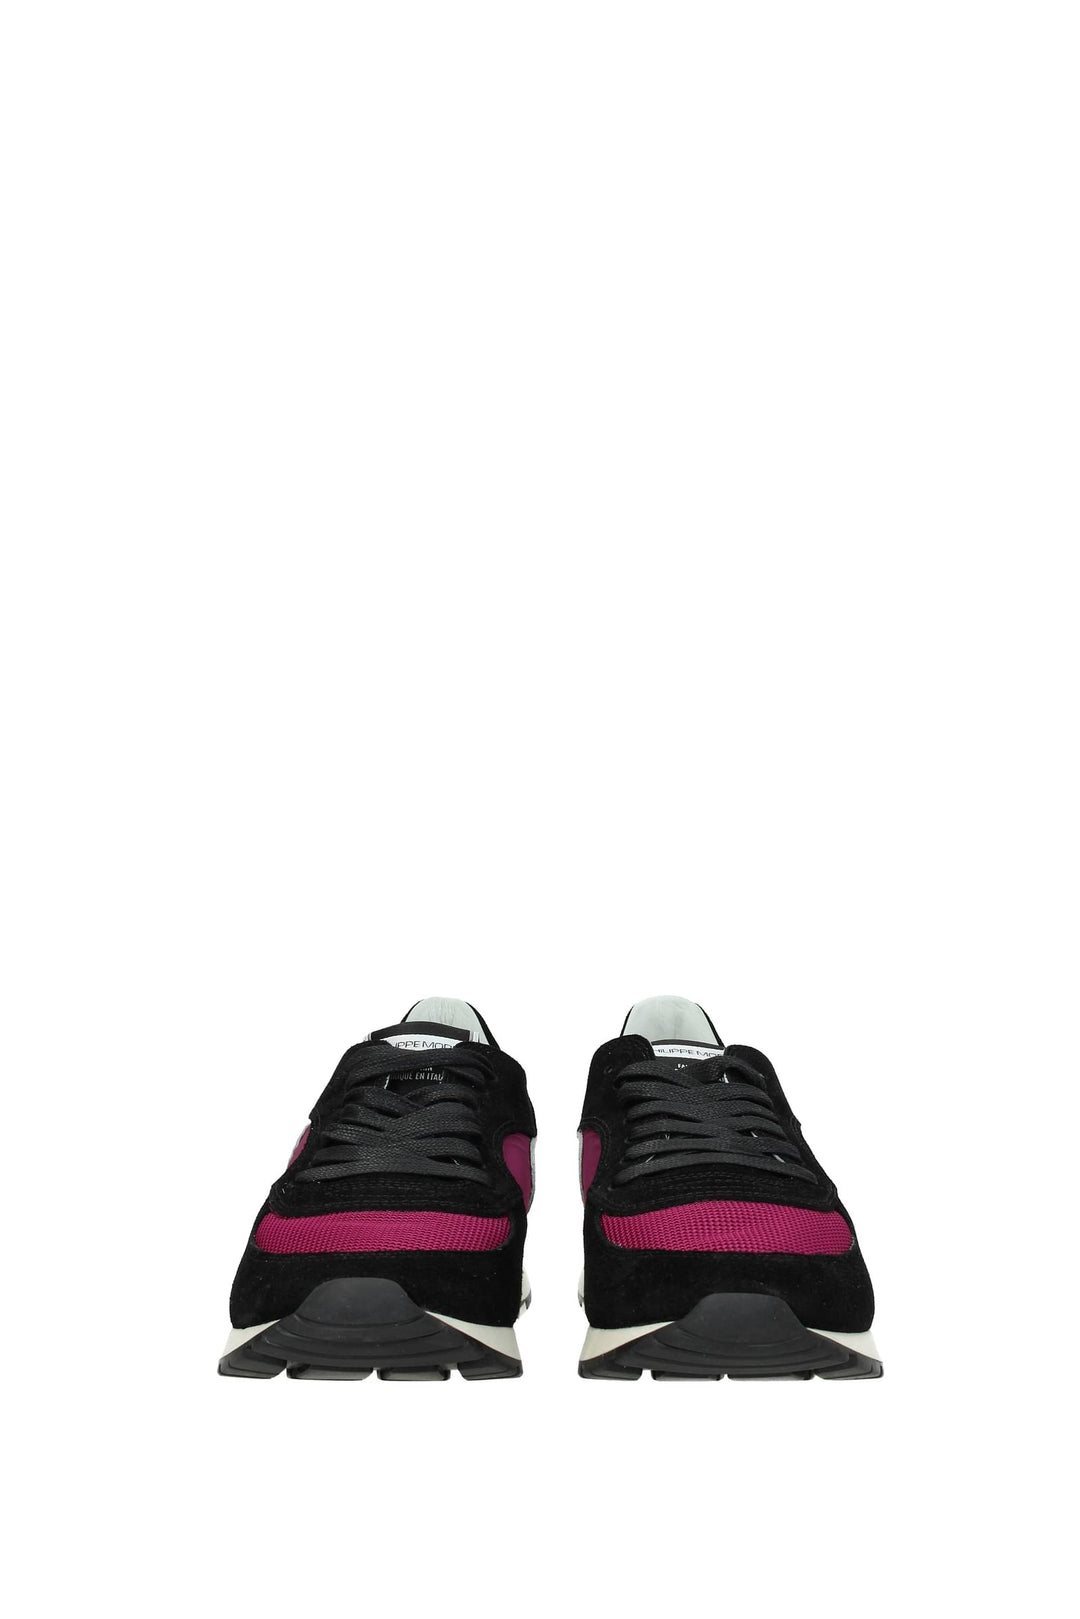 Sneakers Montecarlo Camoscio Nero Fuxia - Philippe Model - Donna